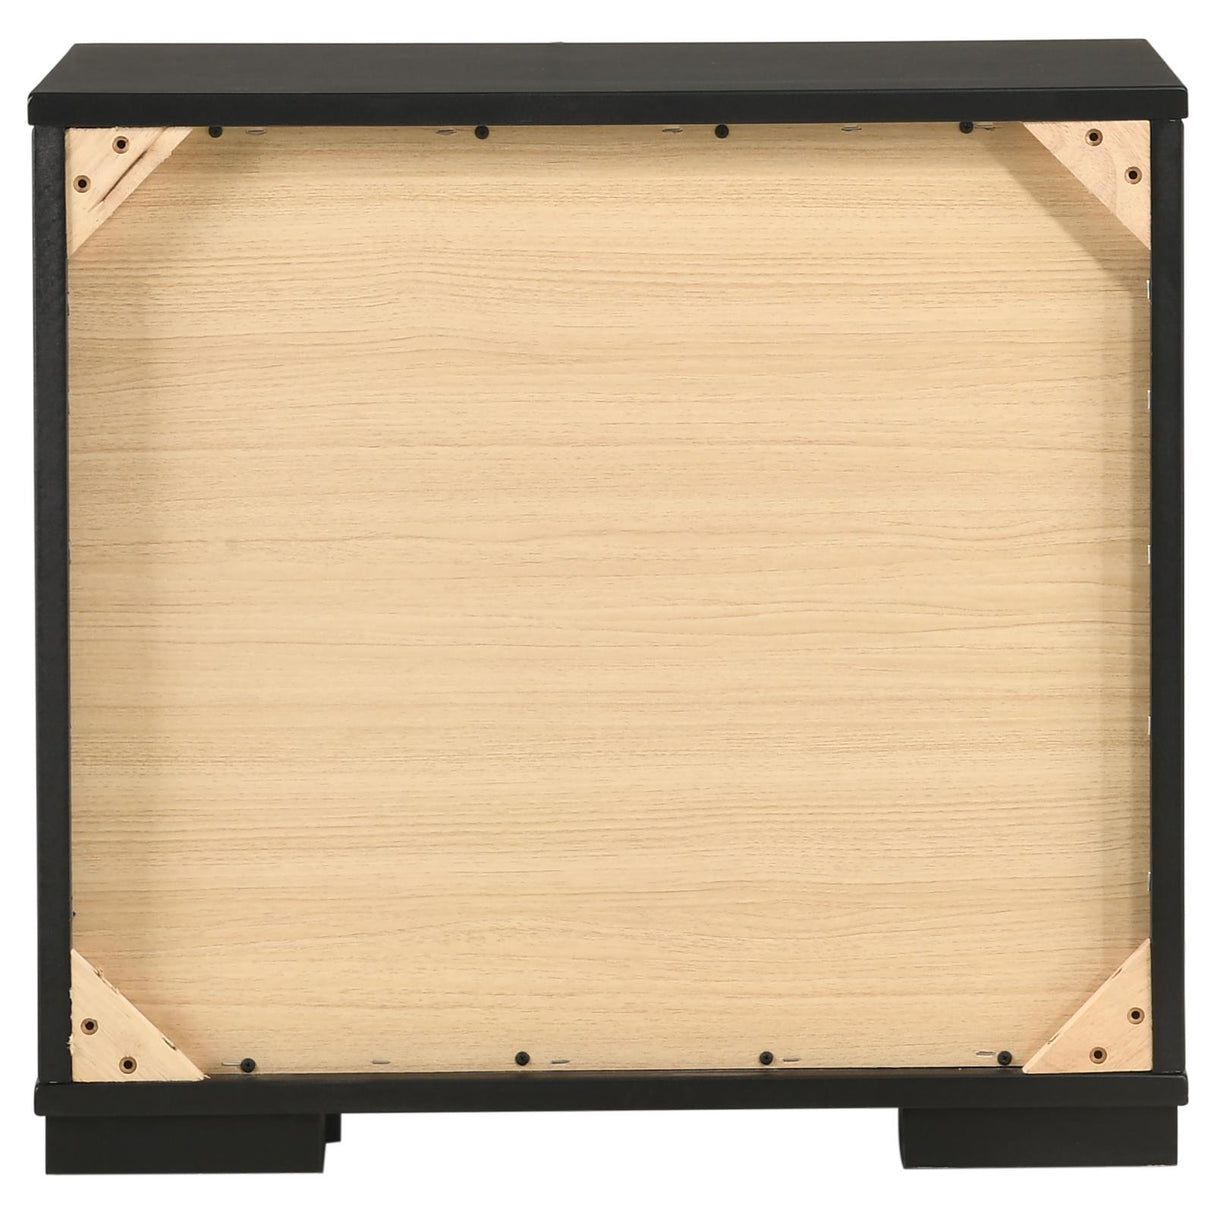 Blacktoft 2-drawer Nightstand Black - 207102 - Luna Furniture